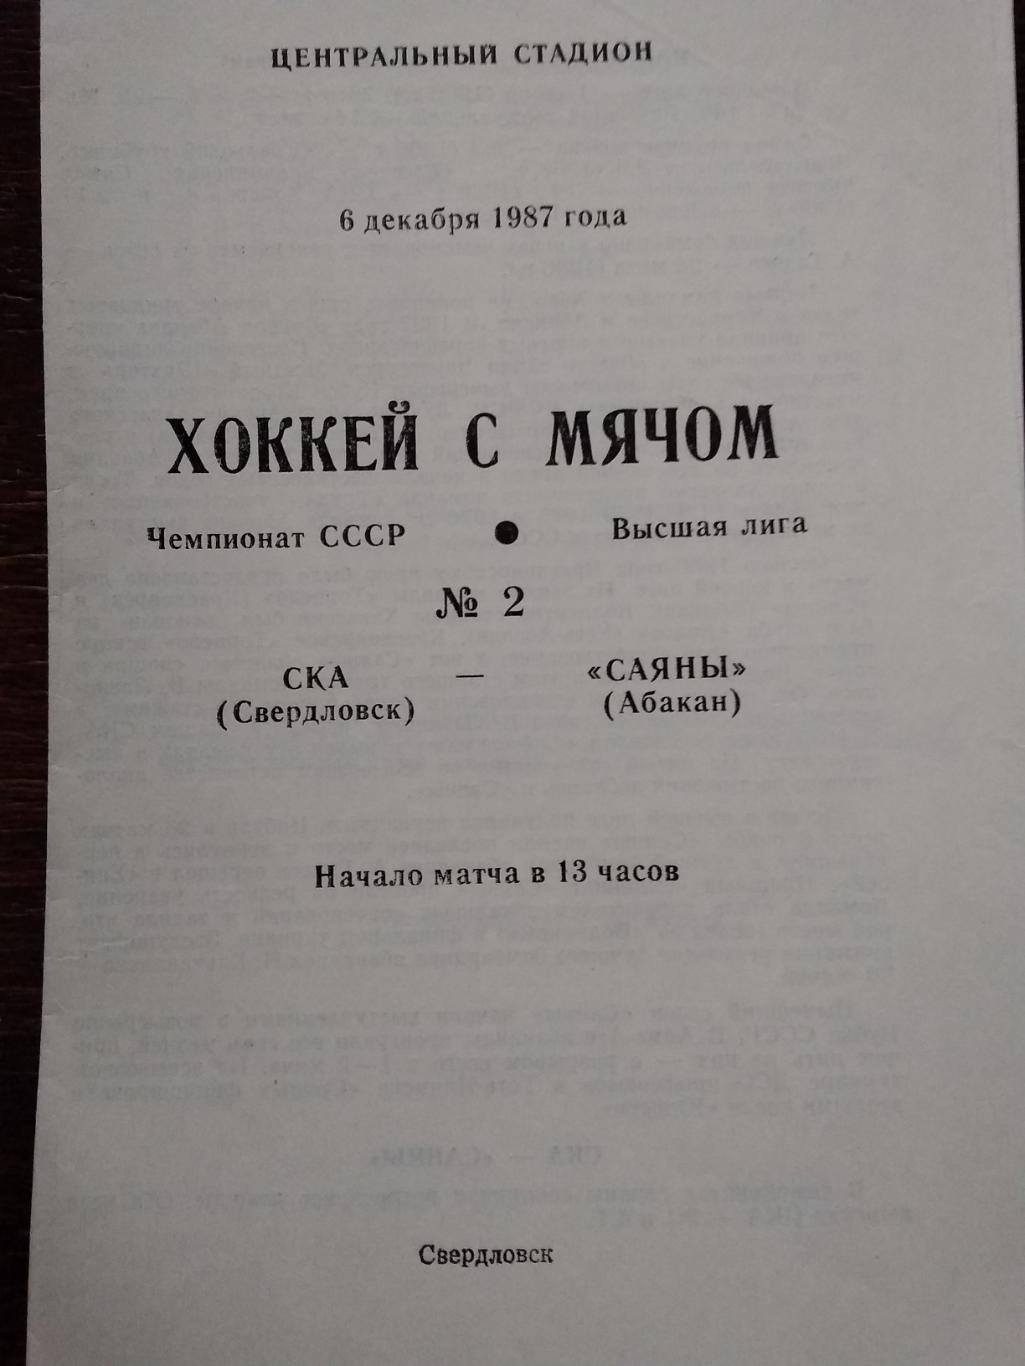 СКА (Свердловск) - Саяны (Абакан). 6 декабря 1992.